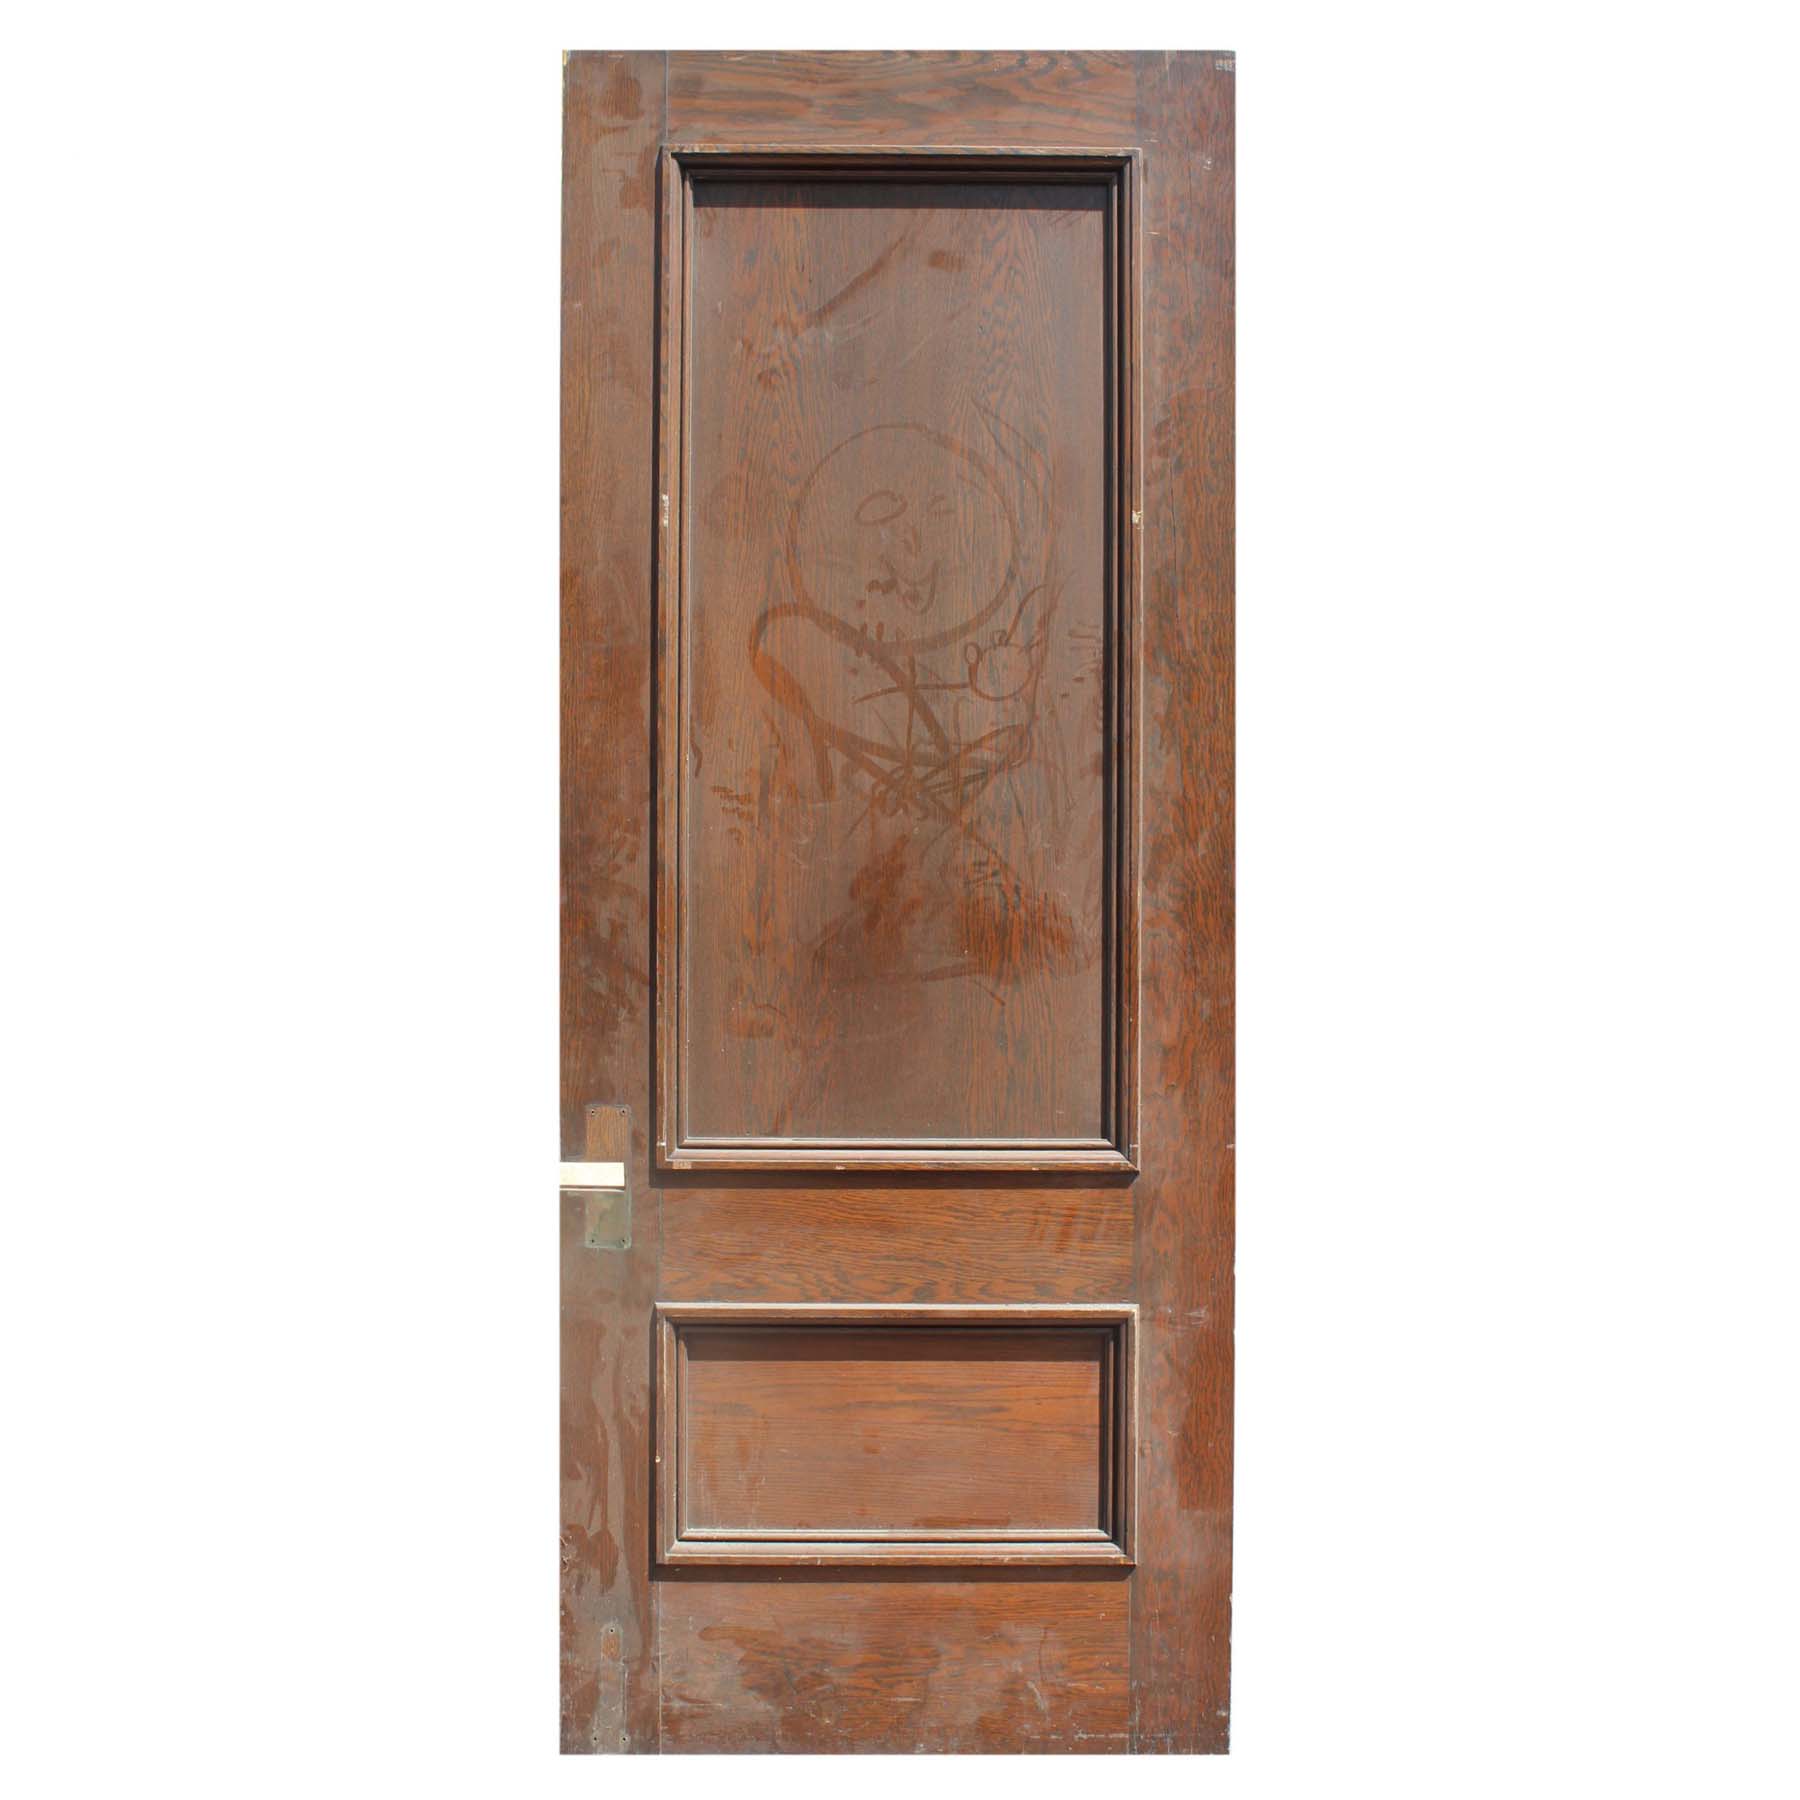 SOLD Salvaged 38” Solid Oak Door -67962